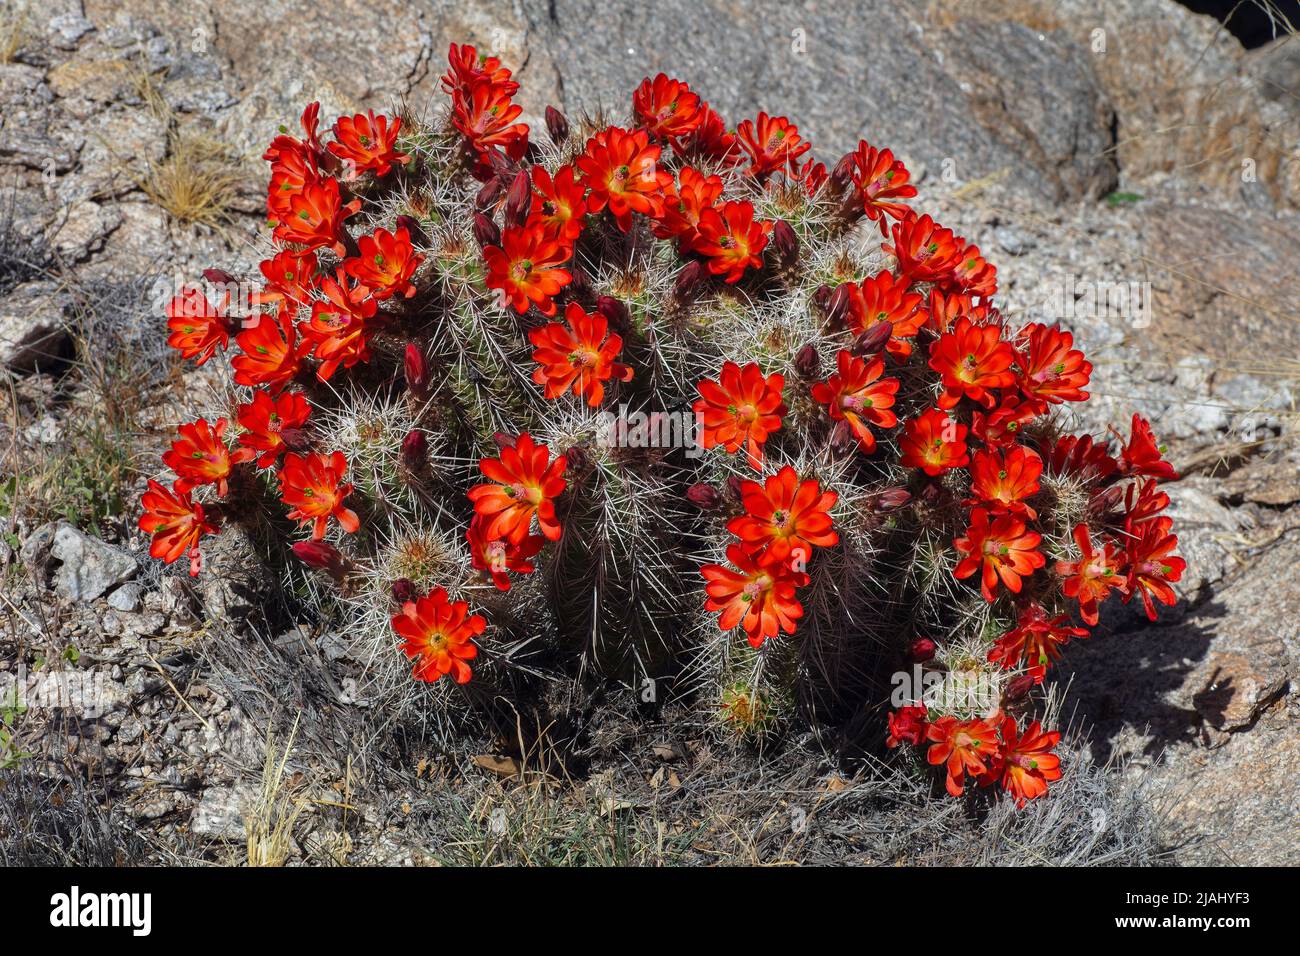 Claret Cup Cactus in Full Bloom, Echinocereus triglochidiatus Stock Photo